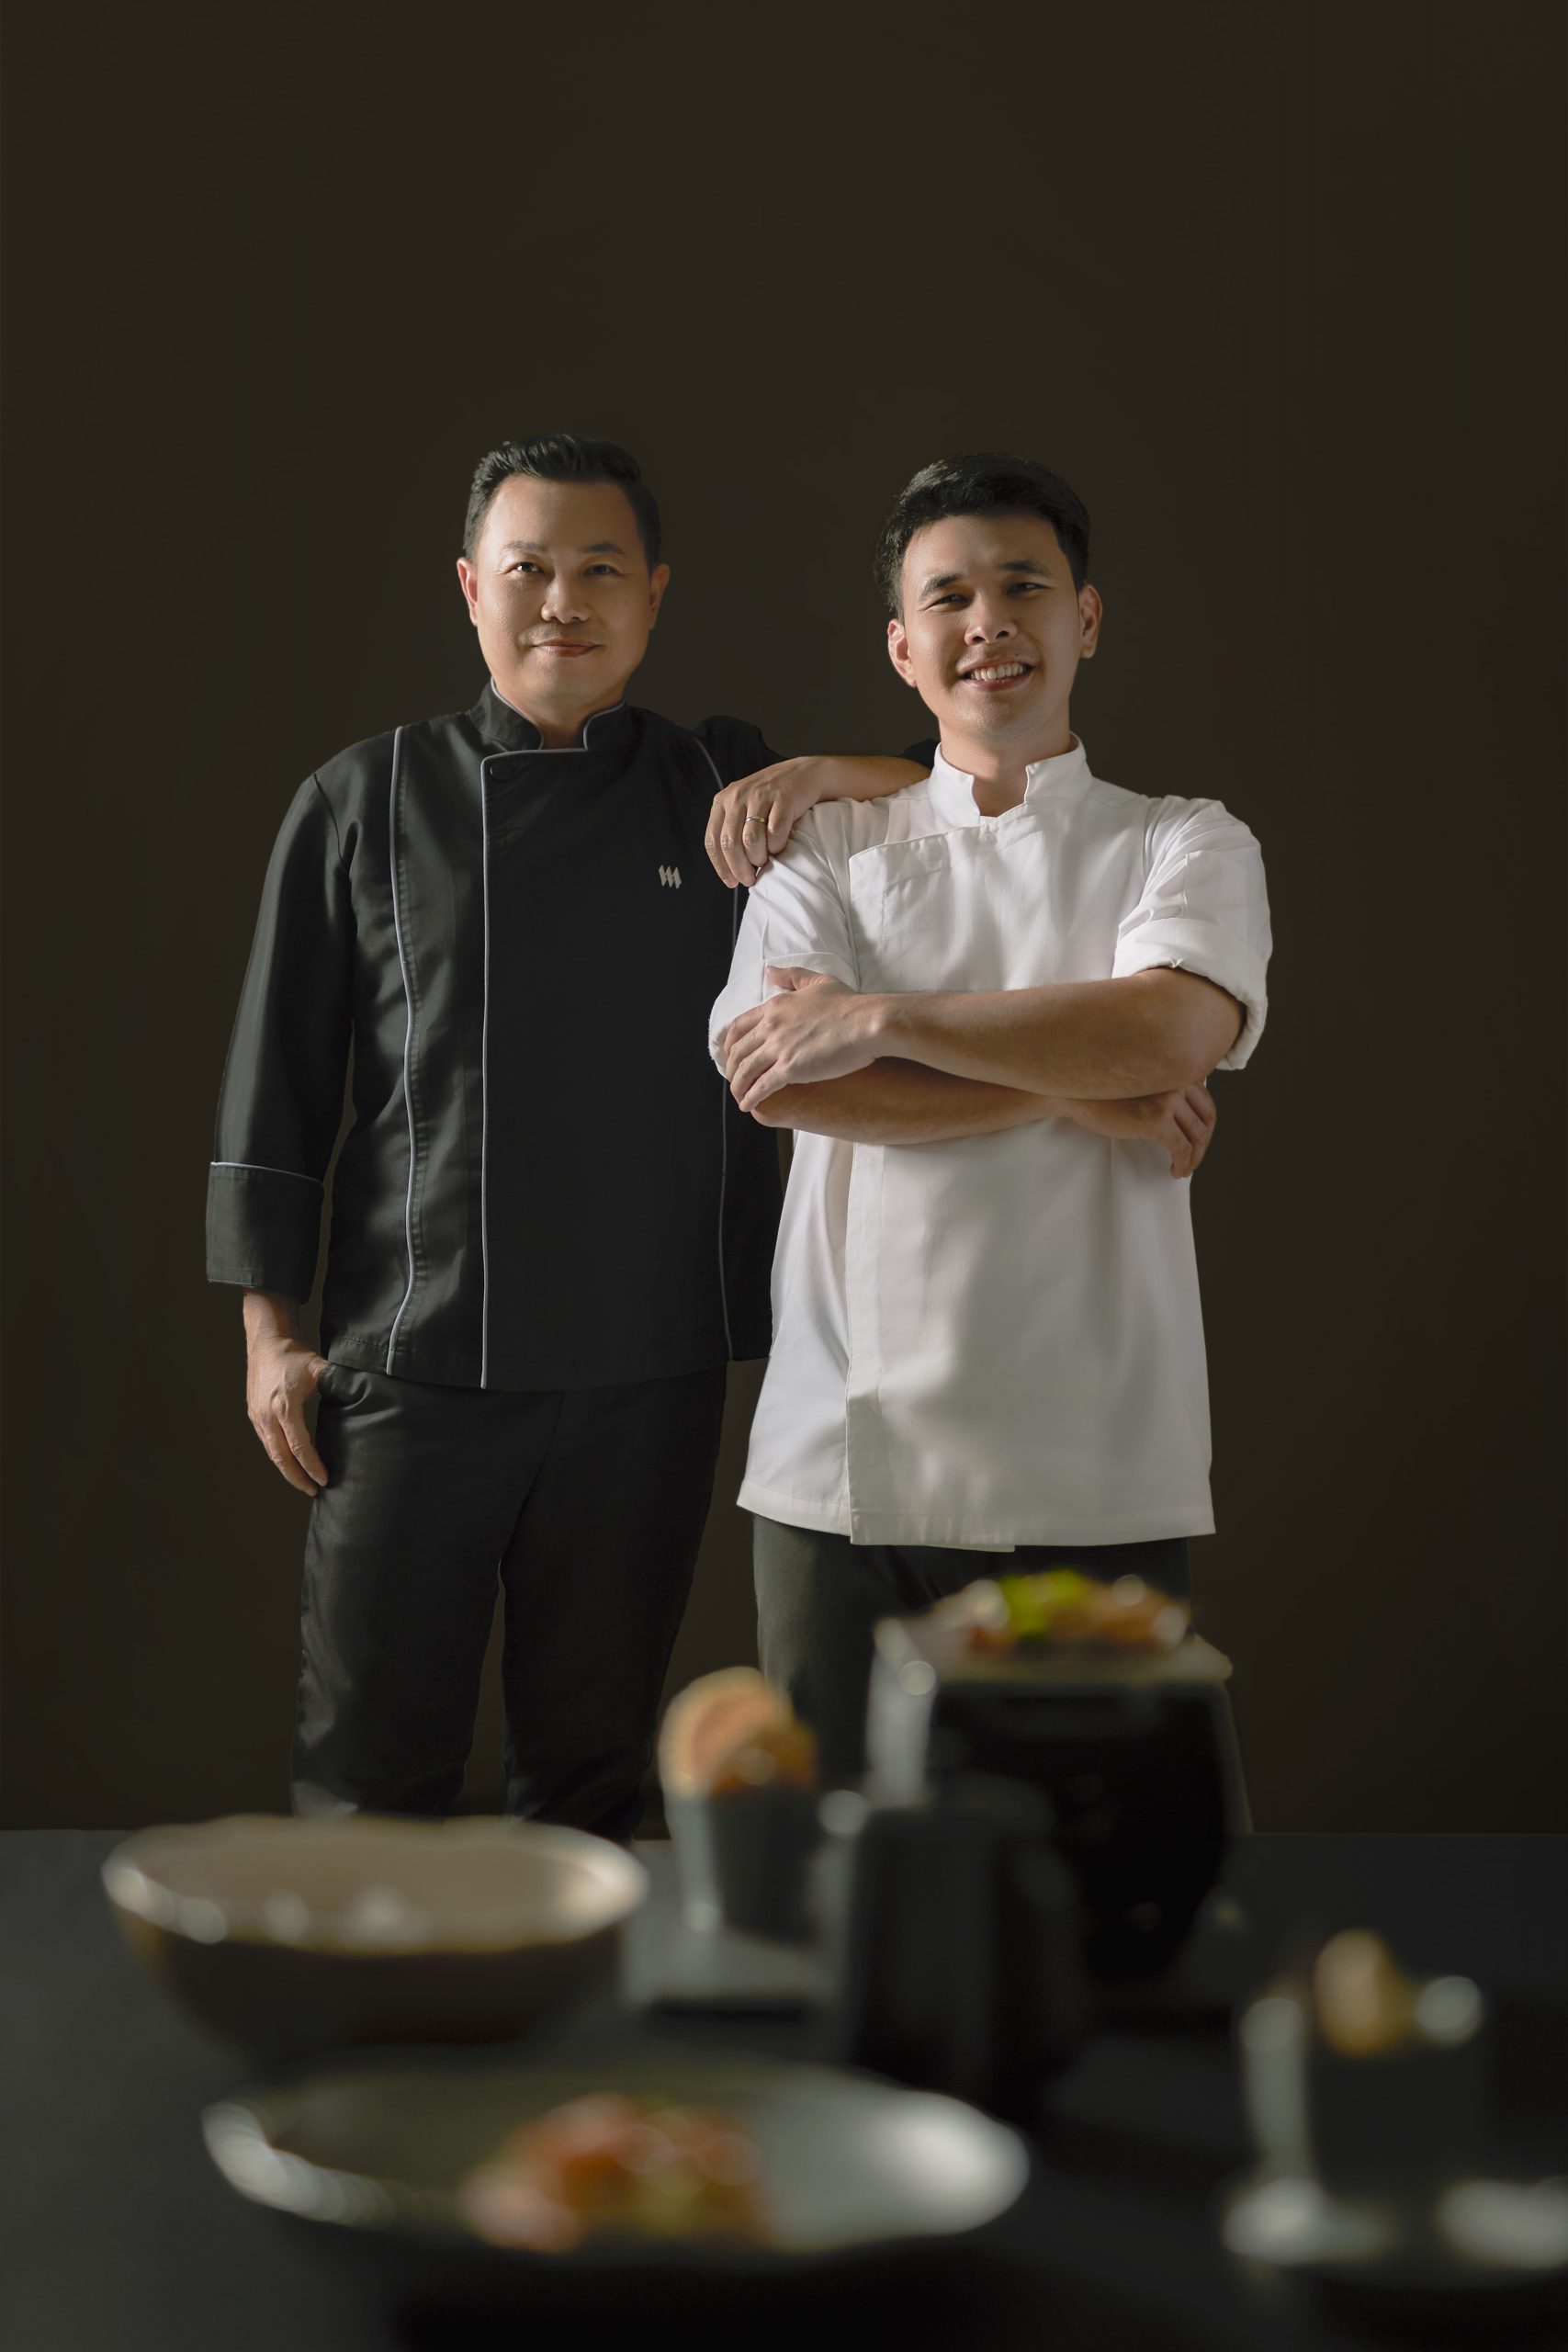 เปิดประสบการณ์ความอร่อยสุดเอ็กซ์คลูซีฟ ครั้งแรกกับการร่วมมือรังสรรค์มื้อค่ำสุดพิเศษ จาก 2 เชฟ “เชฟตั้ม” Head Chef ของเมสัน และ “เชฟเฟิร์ส” ผู้ชนะ MasterChef Thailand ซีซั่น 2 ในงานฉลองครบรอบ 5 ปี The New MASON ณ โรงแรม เมสัน